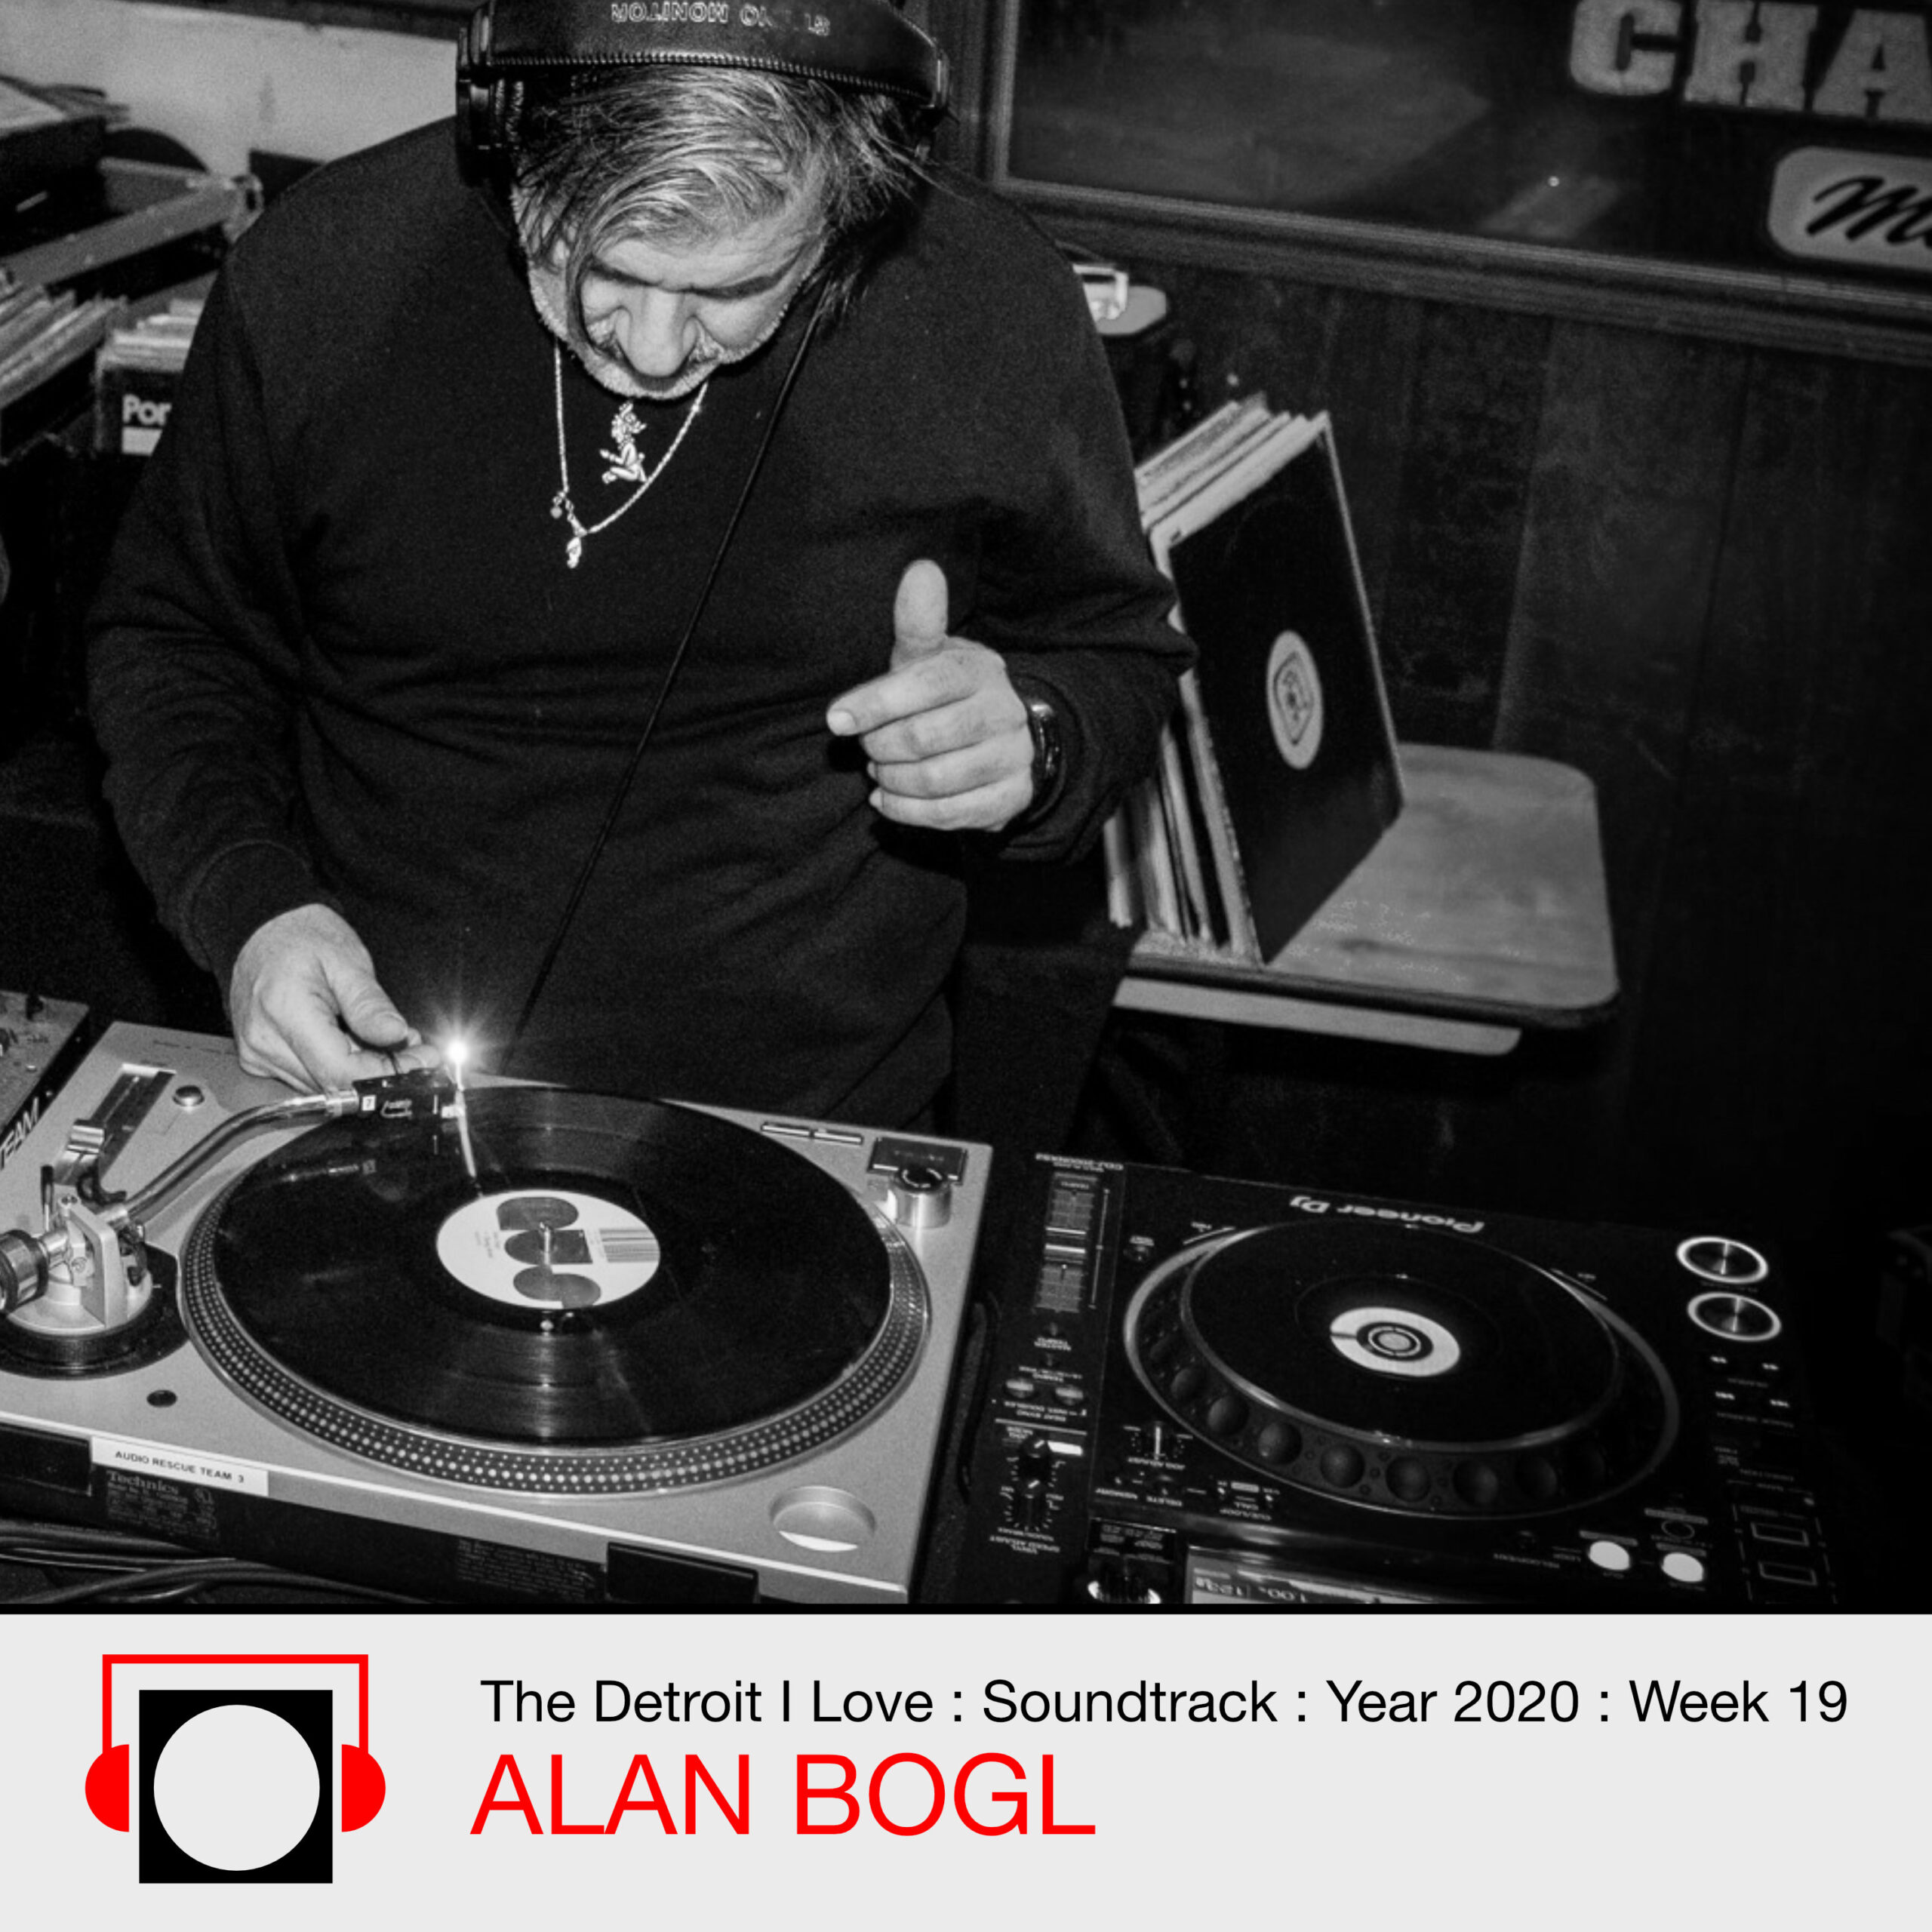 Soundtrack : Alan Bogl